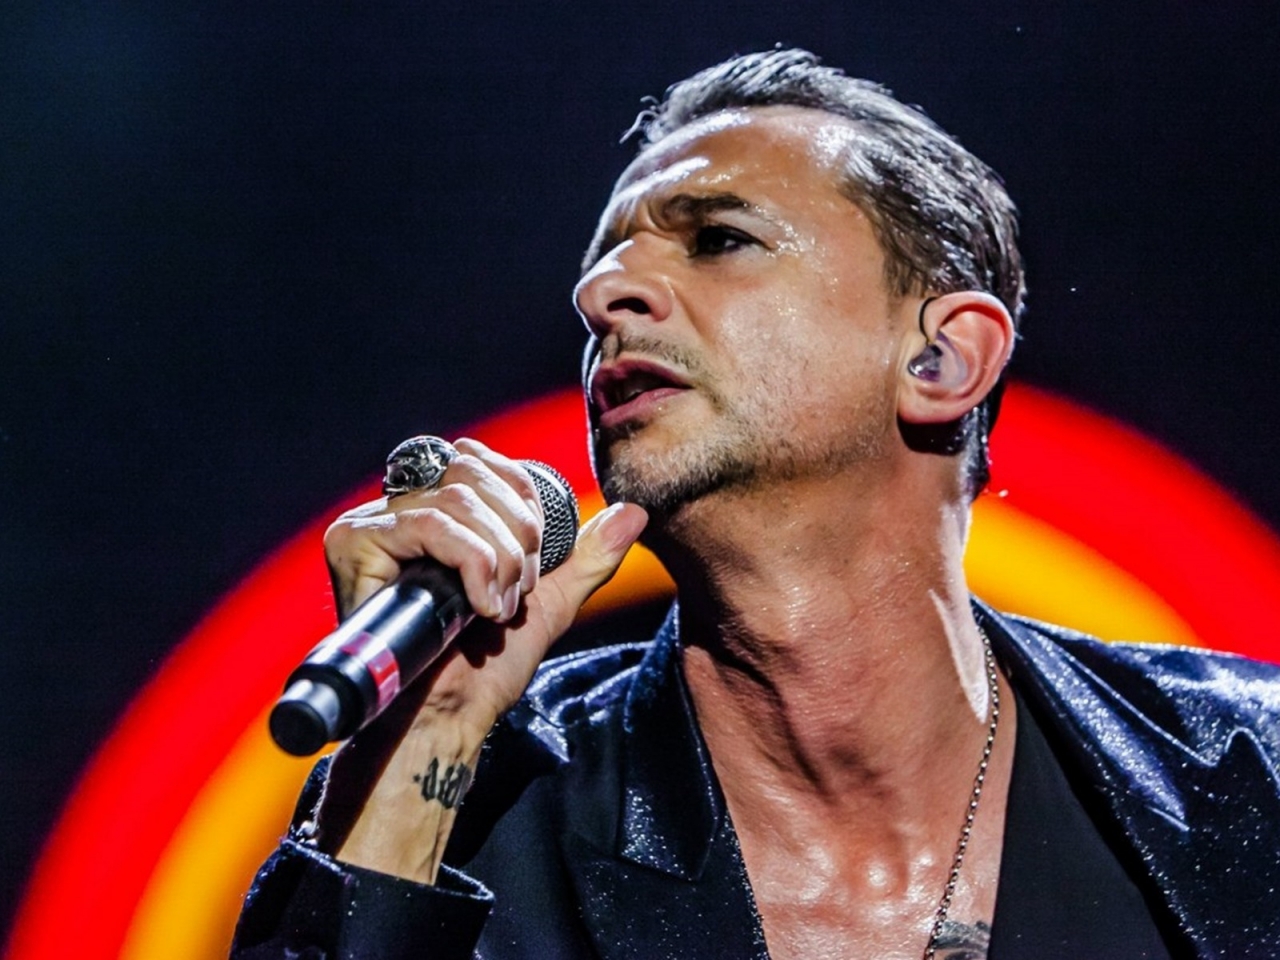 David Gahan Depeche Mode for 1280 x 960 resolution